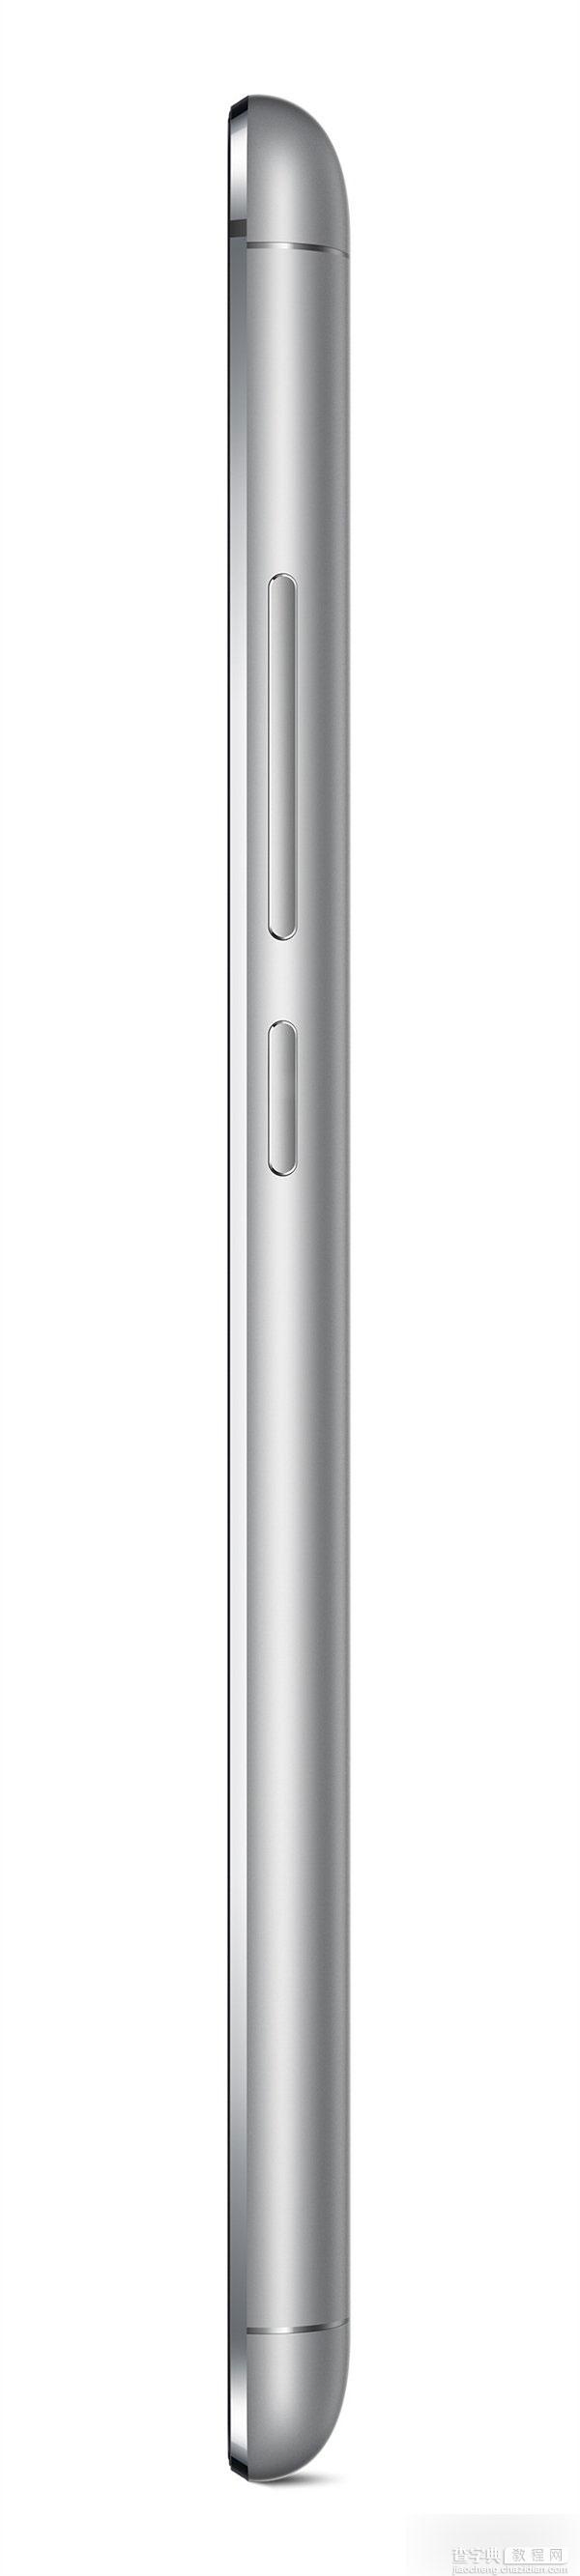 魅族MX5手机的官方高清图赏 全金属机身26